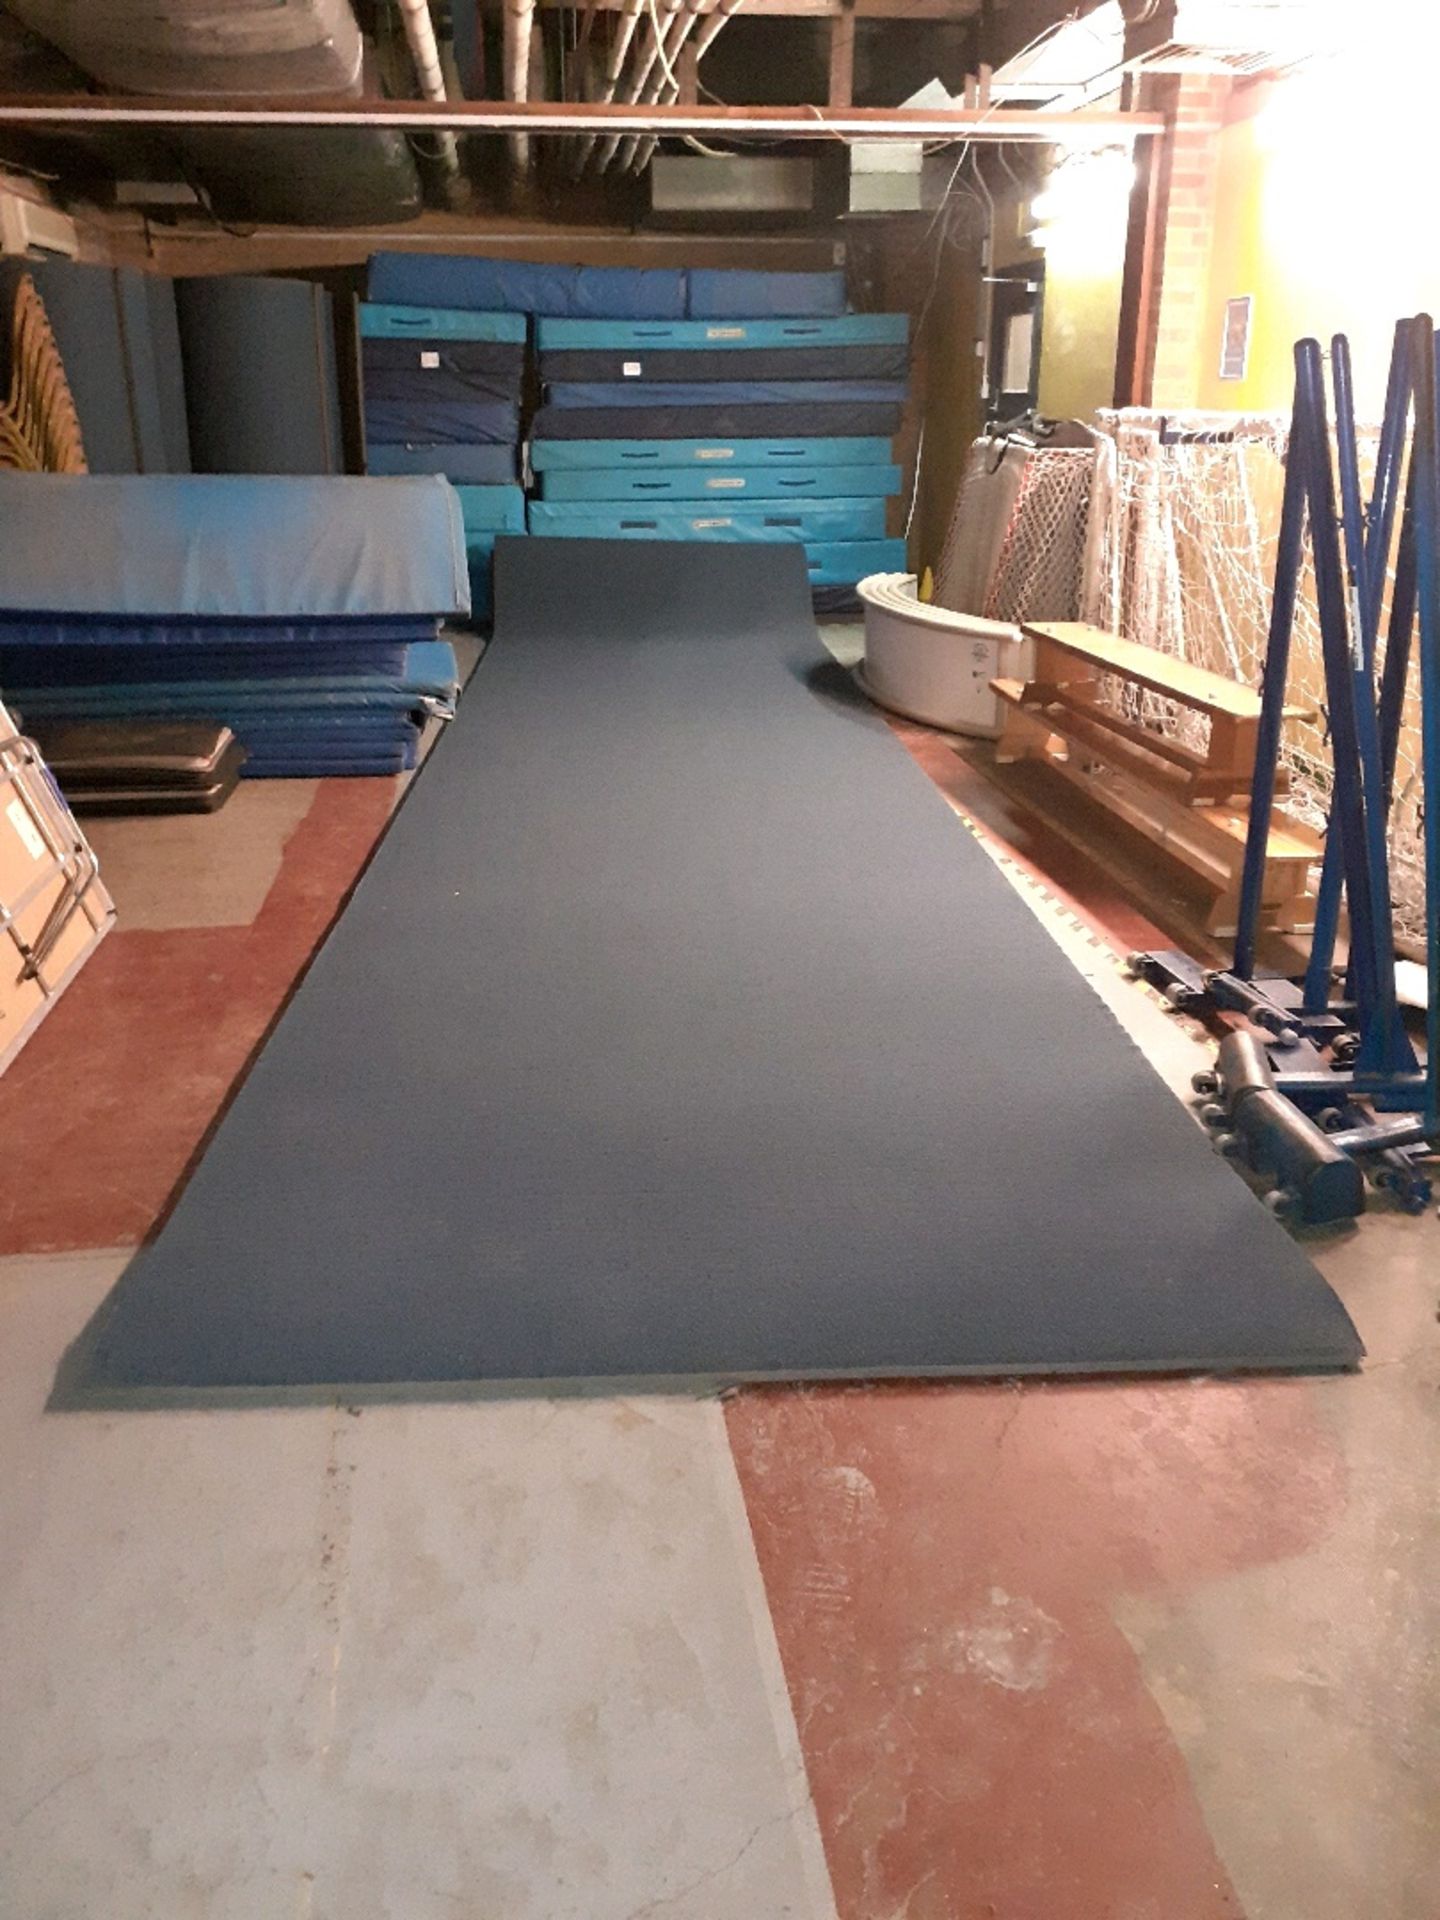 Gymnastics runway mat